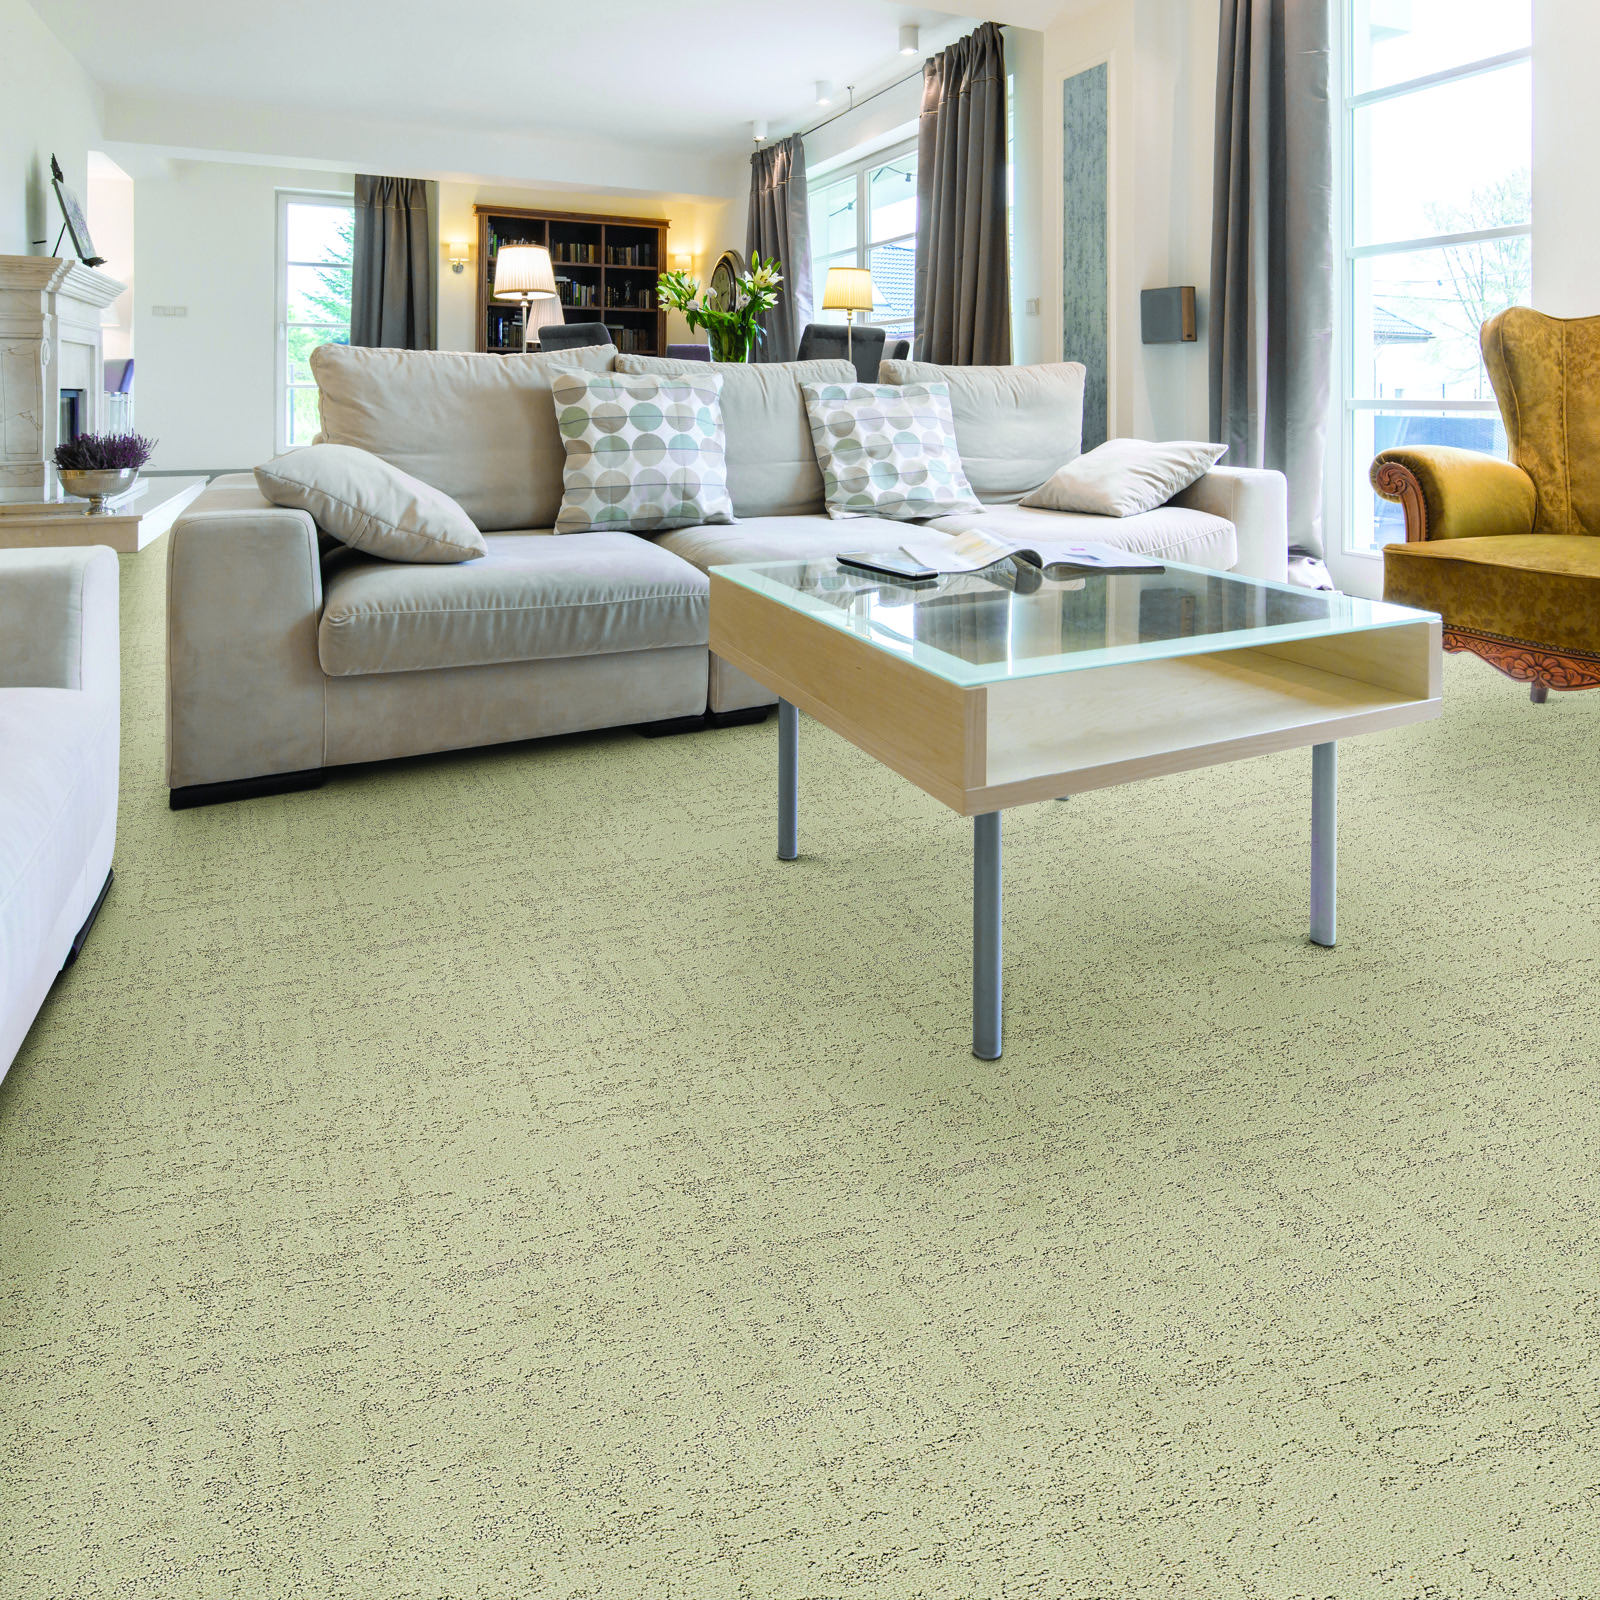 Living room carpet floor | Big Bob's Orem